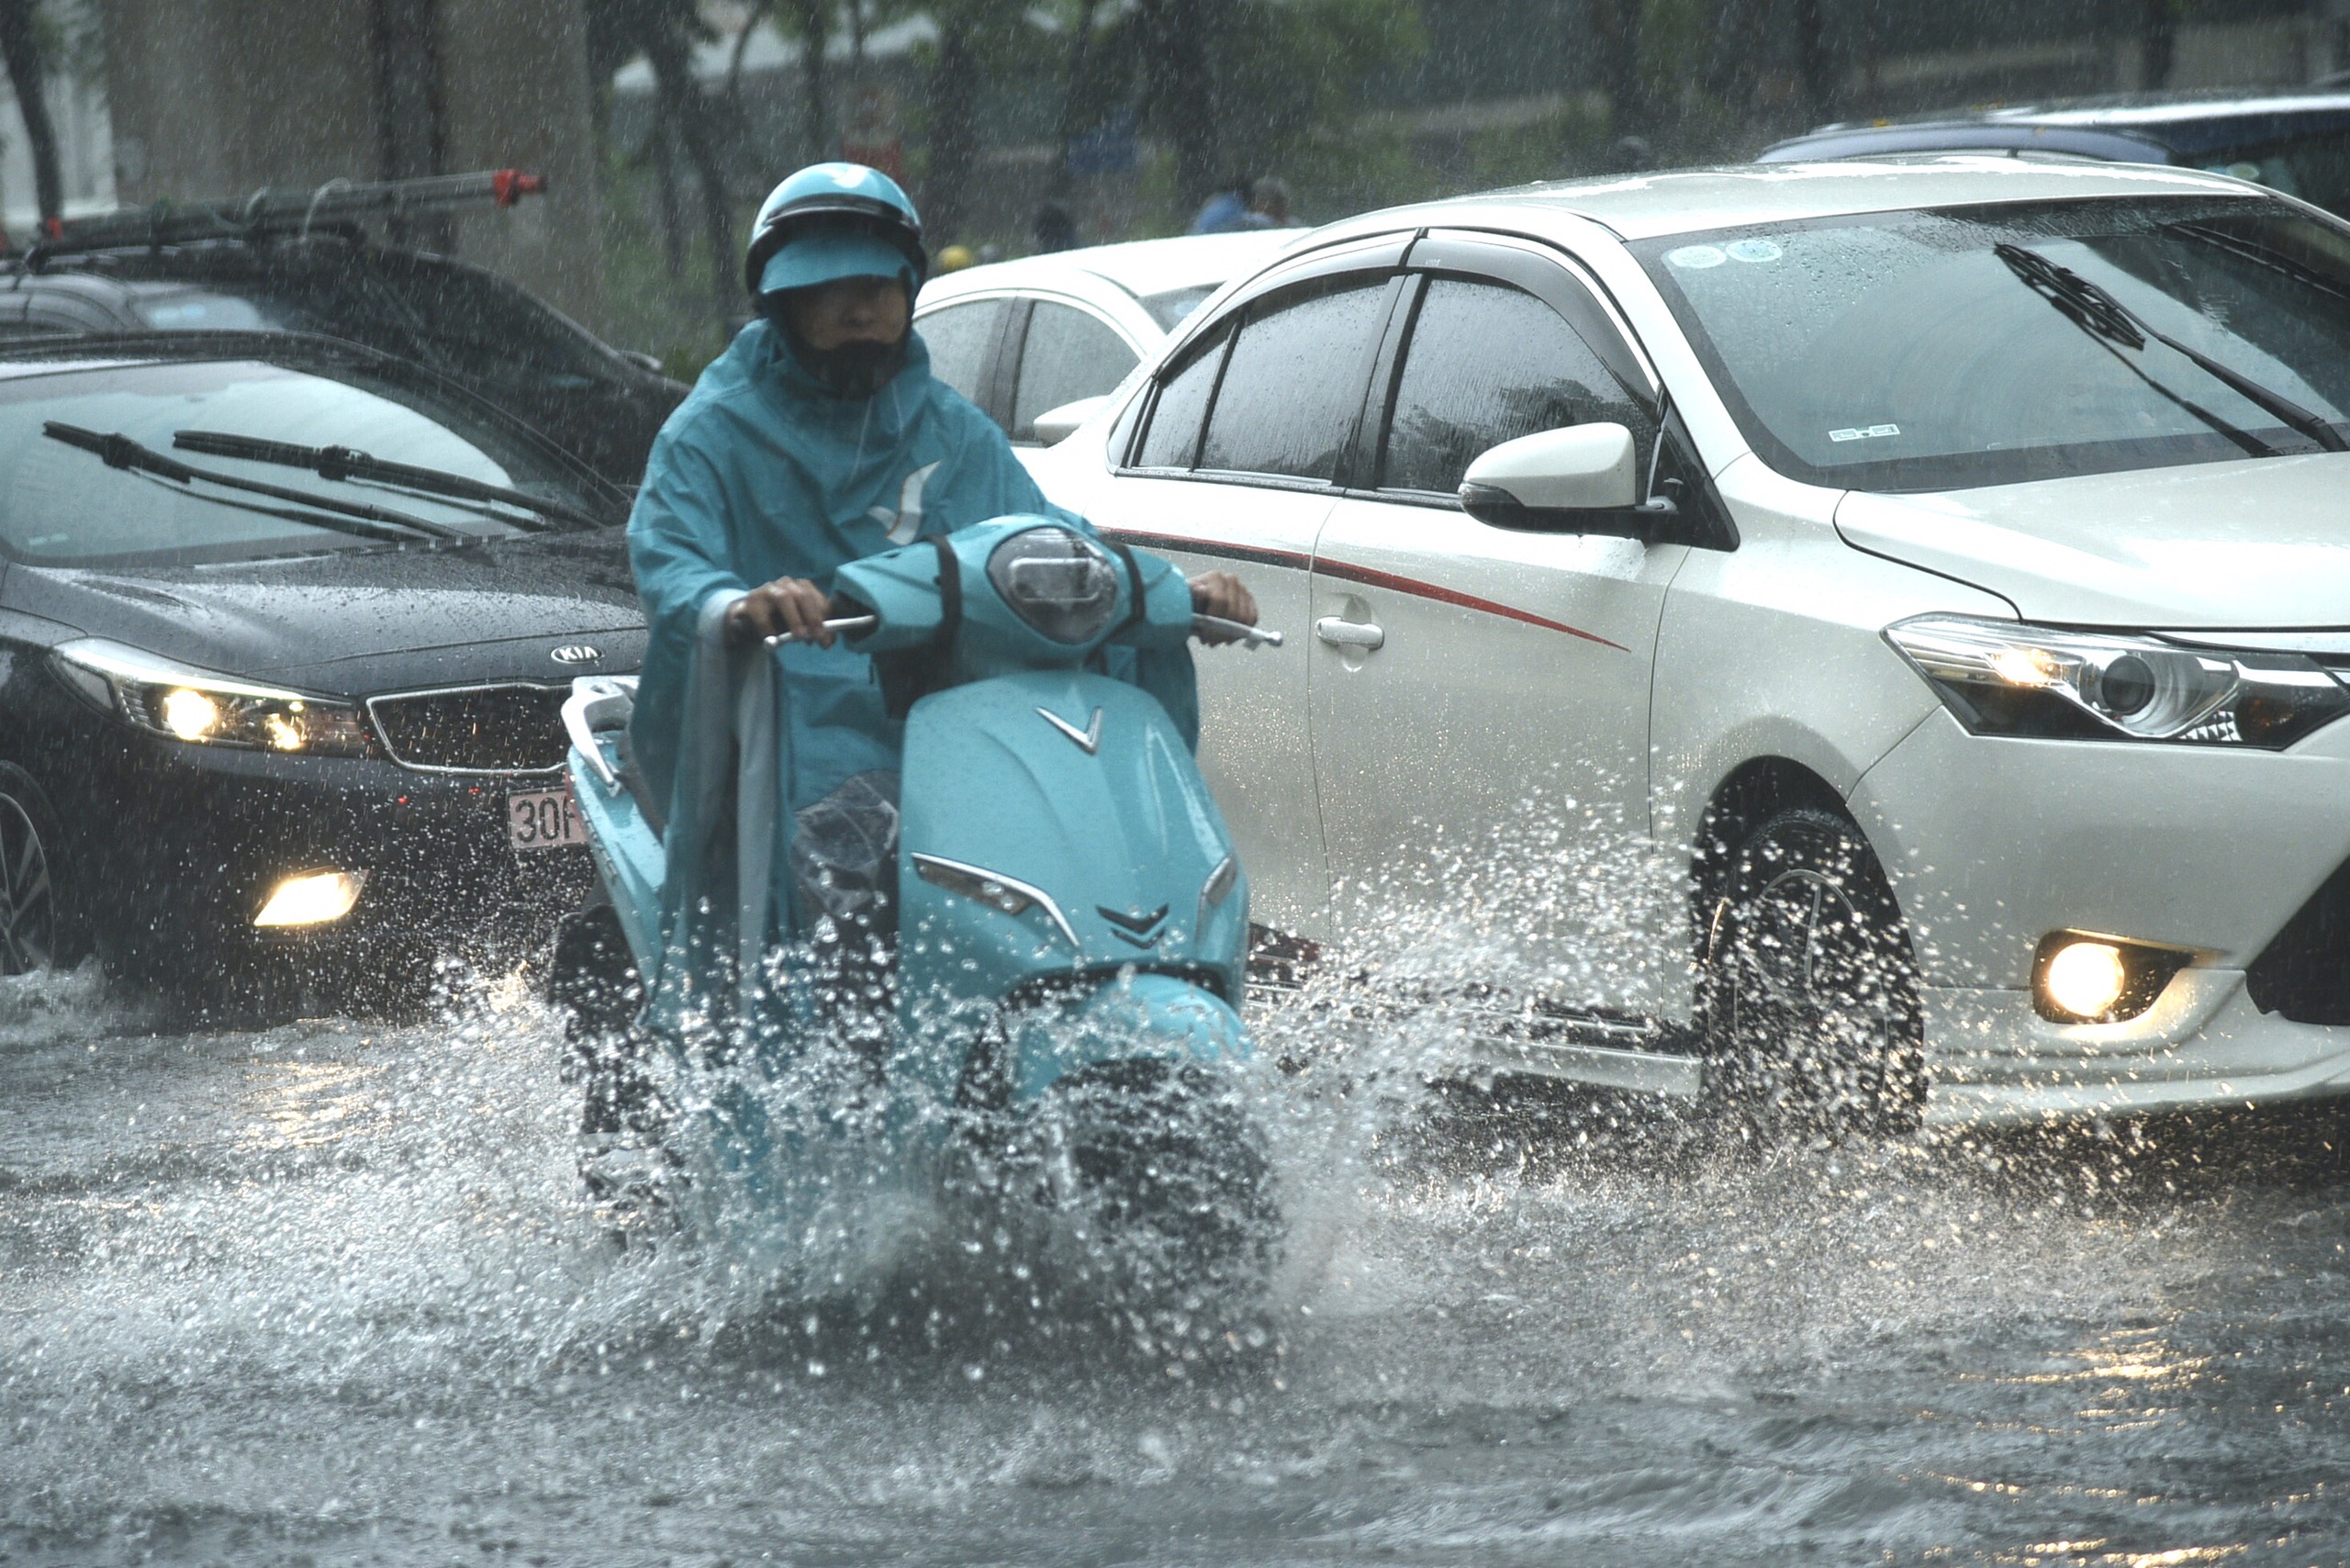 Ngập úng sau mưa lớn, người dân Thủ đô vật vã trên đường đi làm- Ảnh 9.